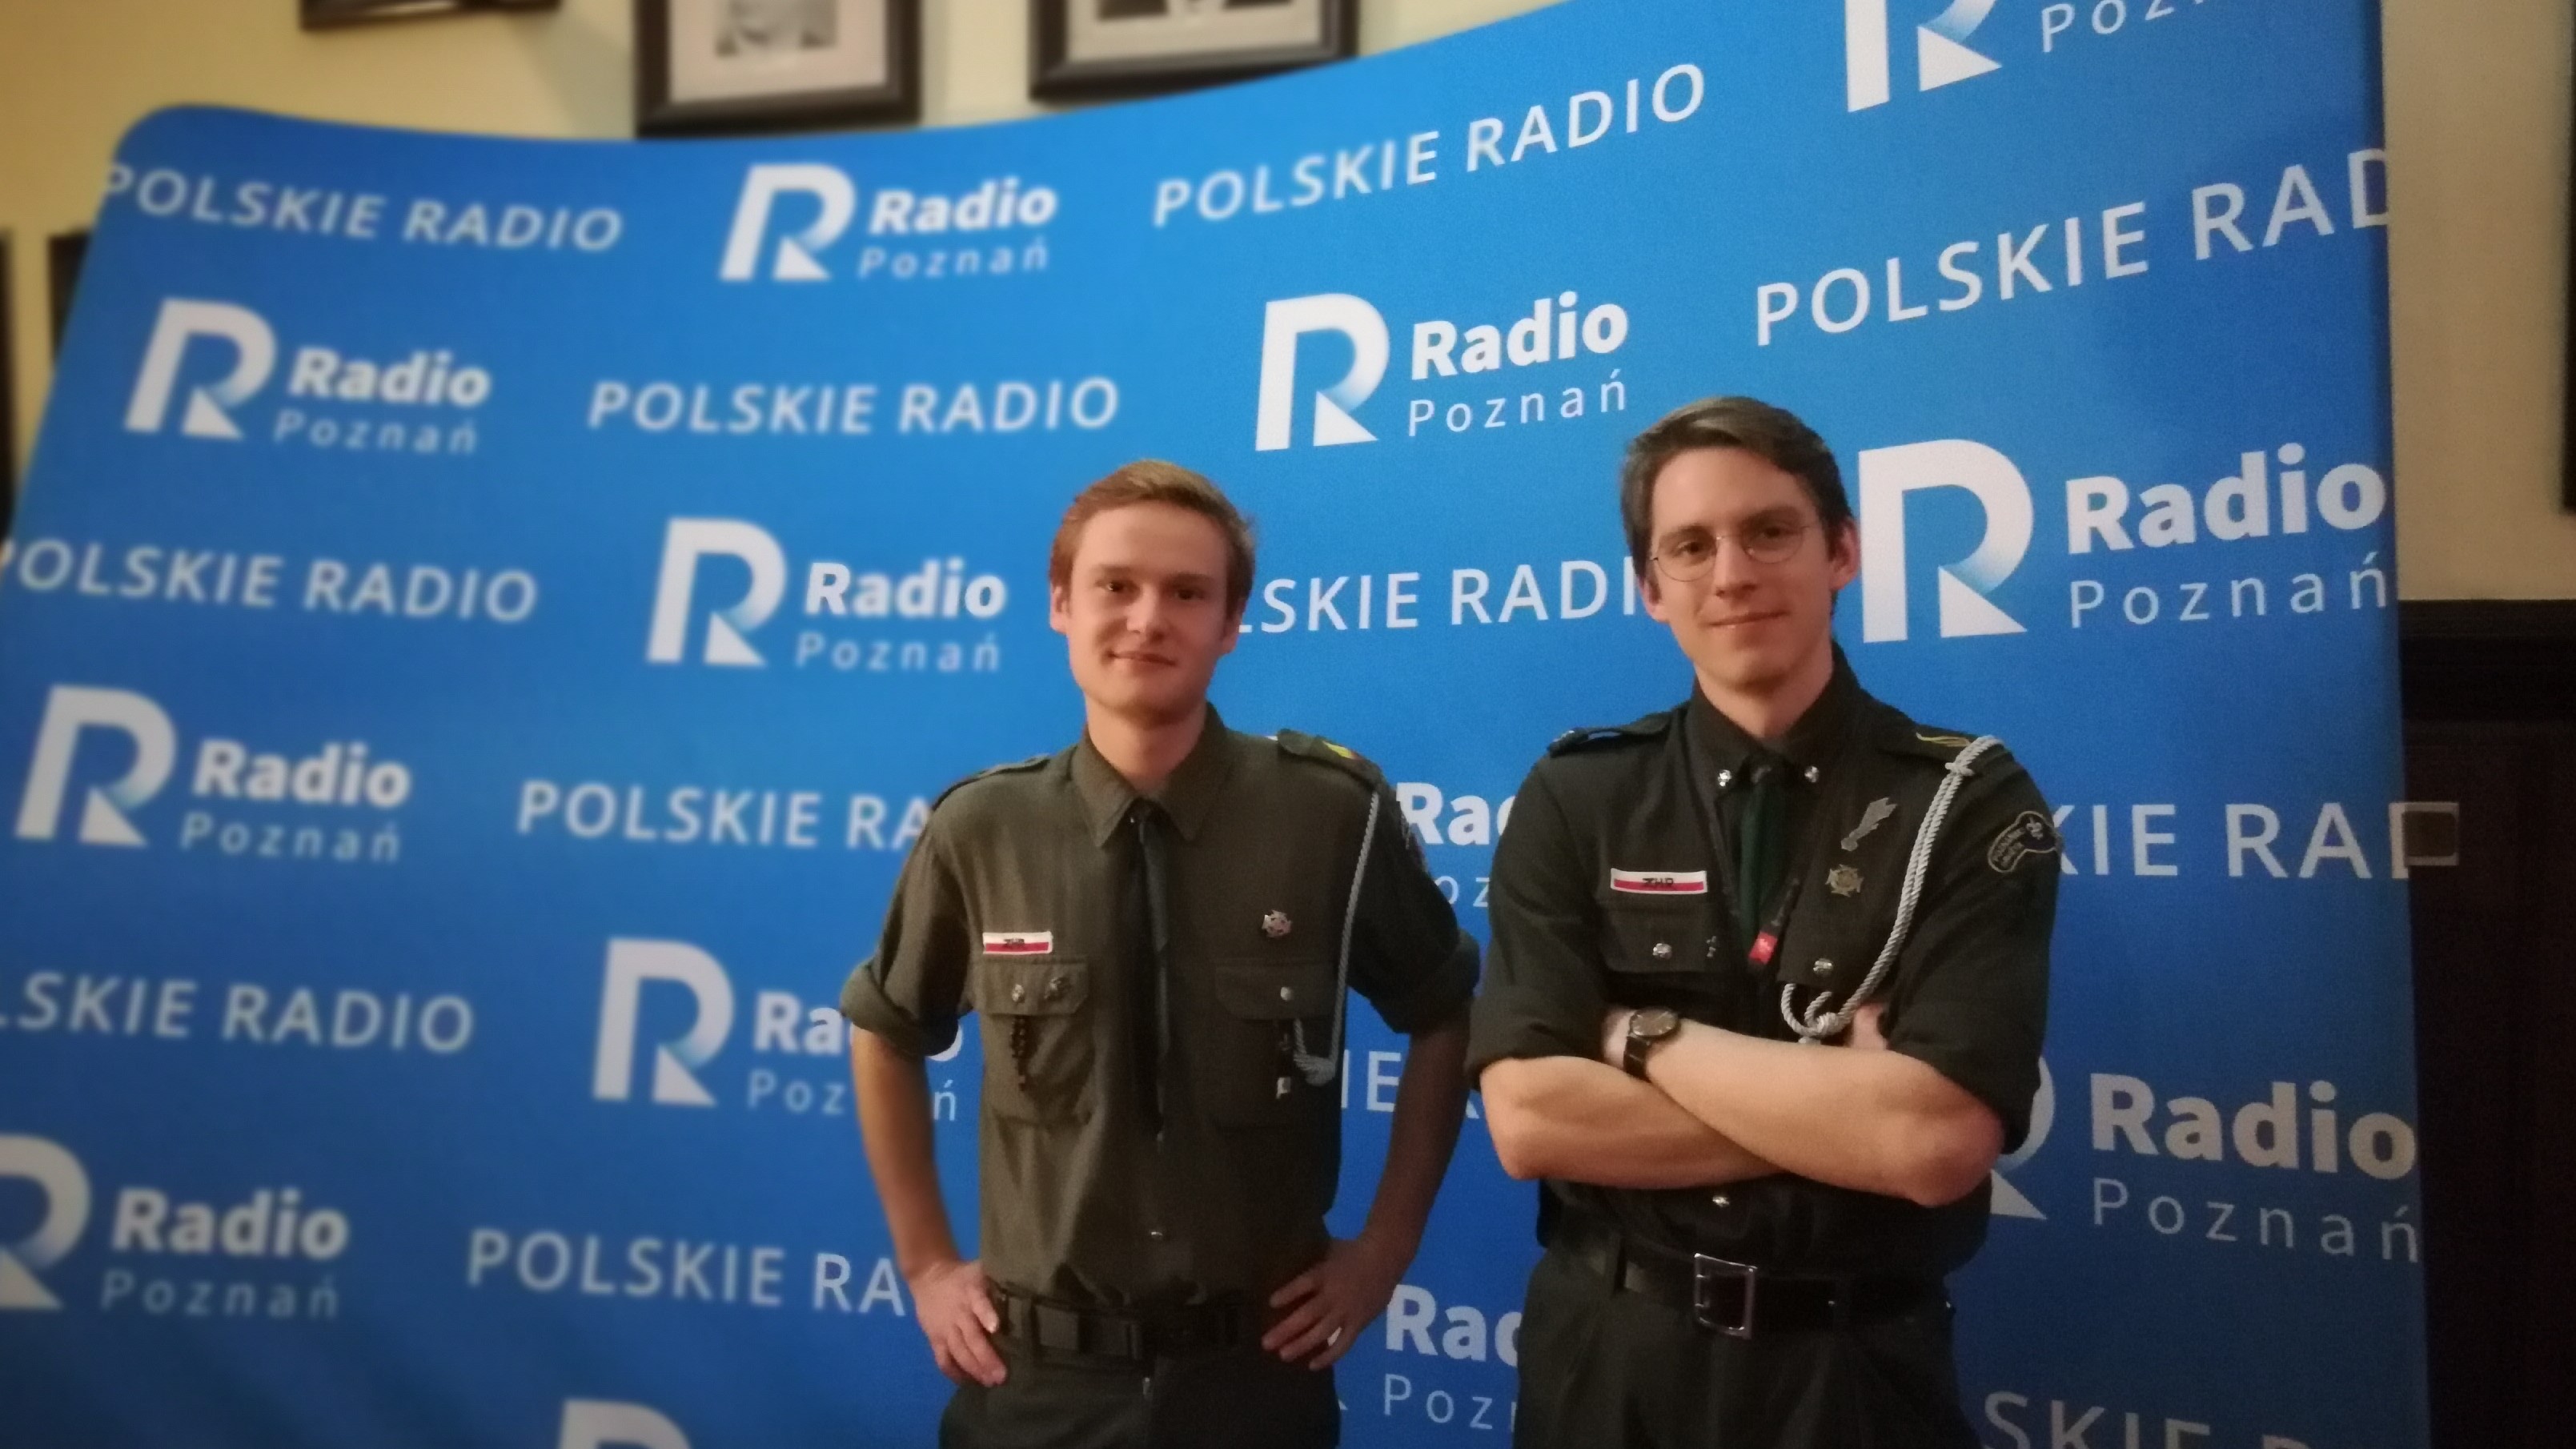 Zlot Związku Harcerstwa Rzeczpospolitej - Radio Poznań